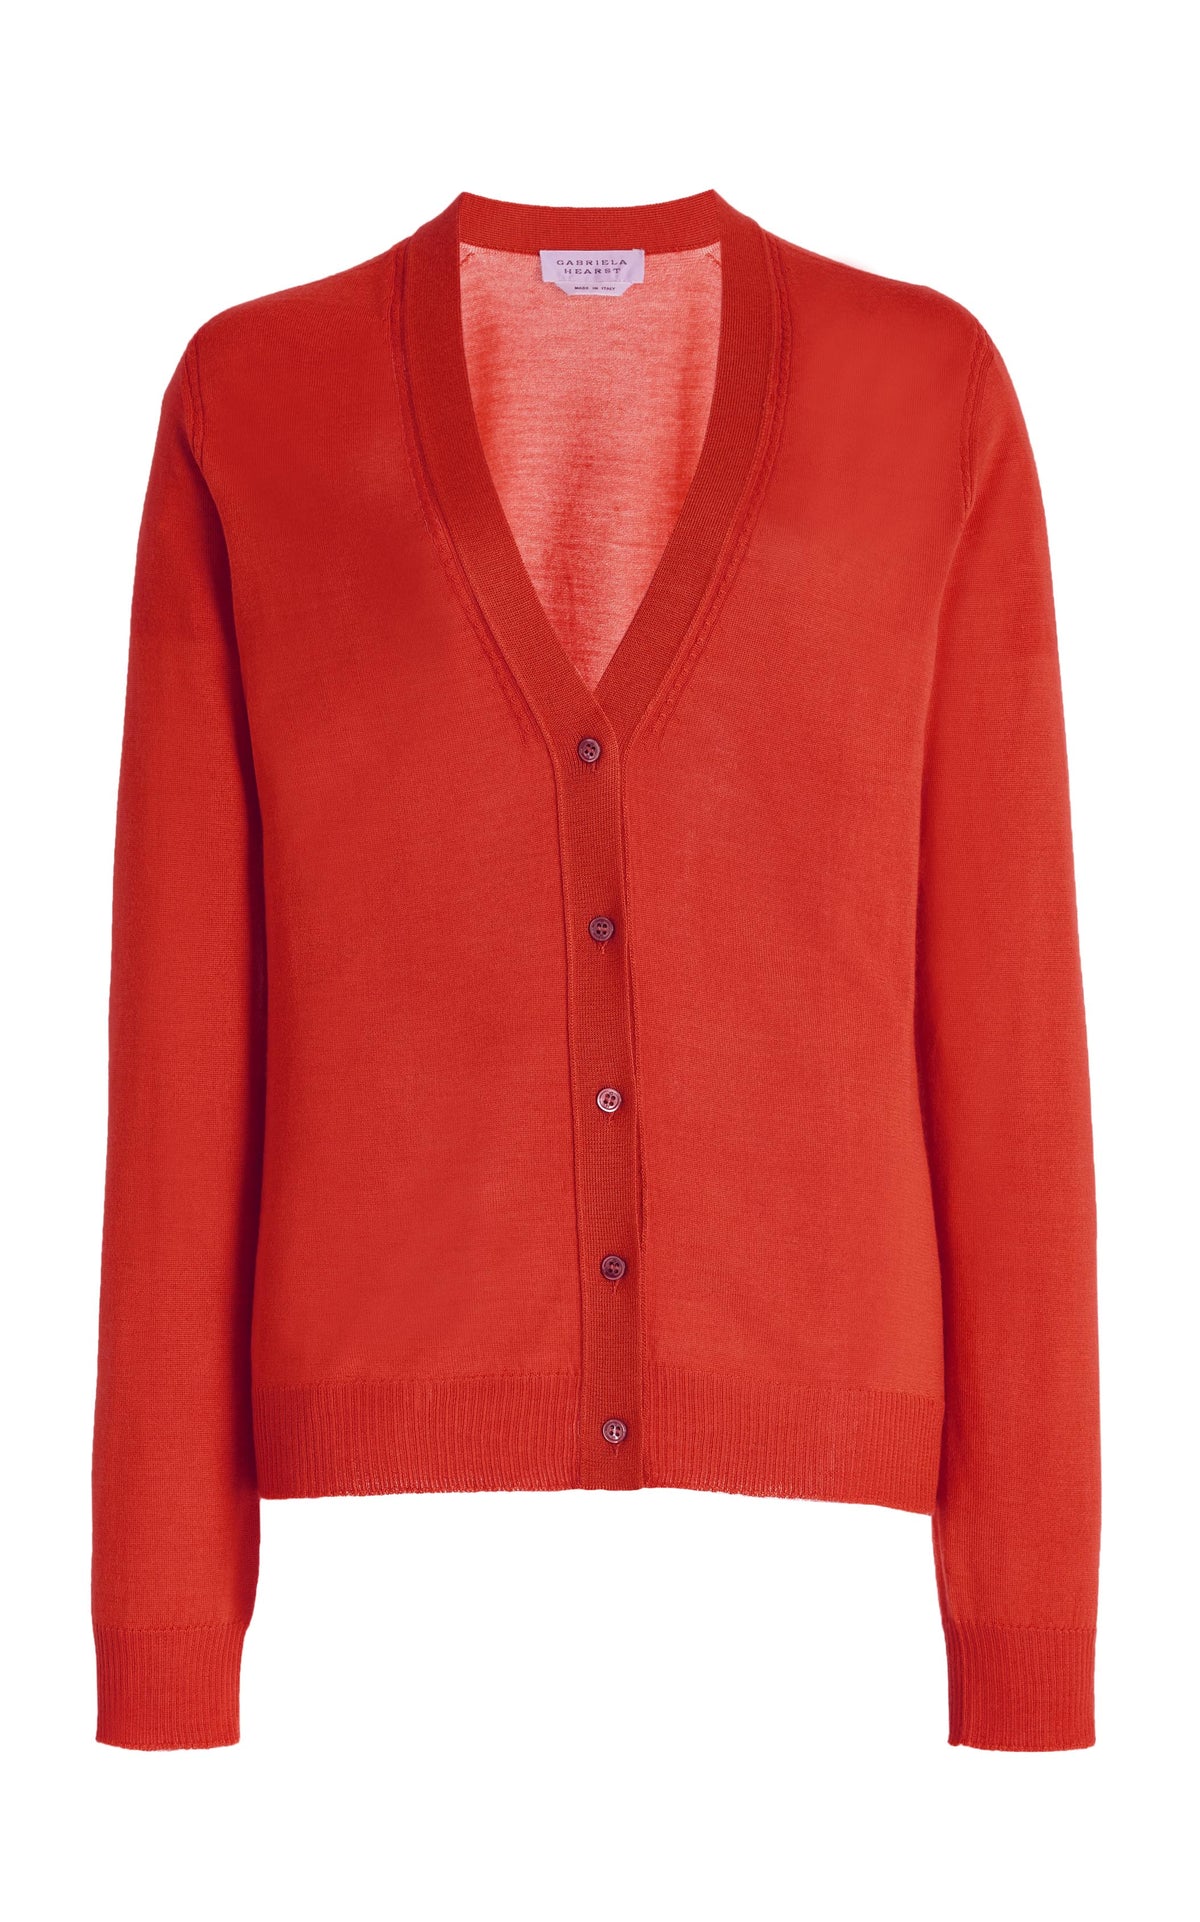 Tori Knit Cardigan in Red Topaz Cashmere Silk